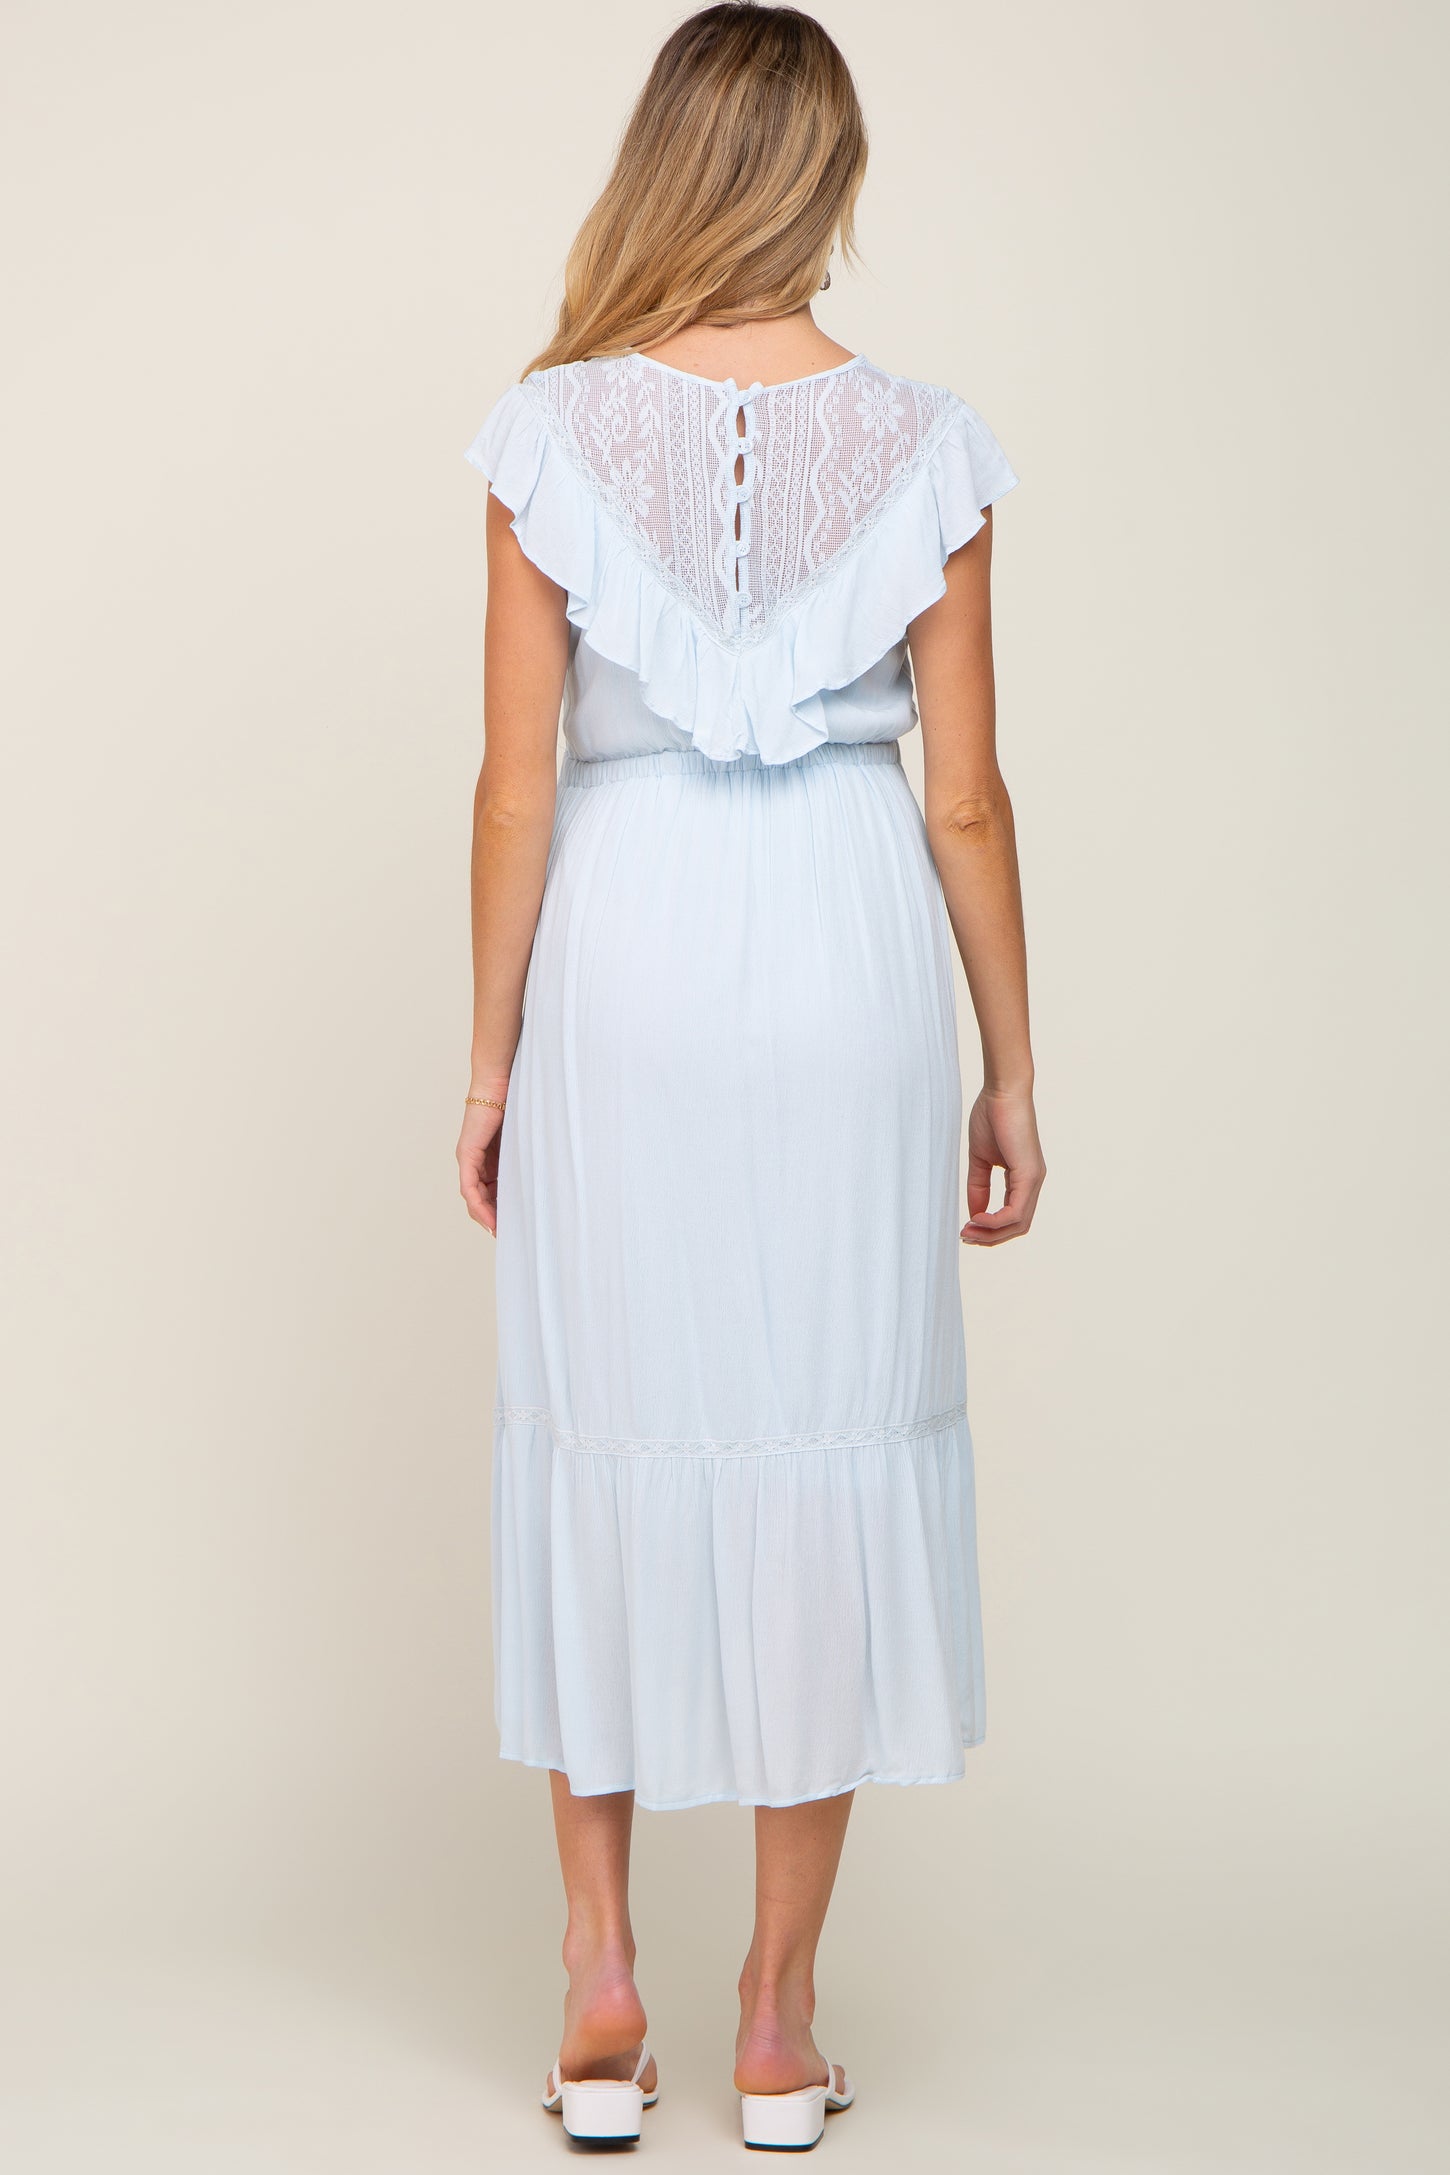 Light Blue Lace Inset Ruffle Maternity Midi Dress– PinkBlush